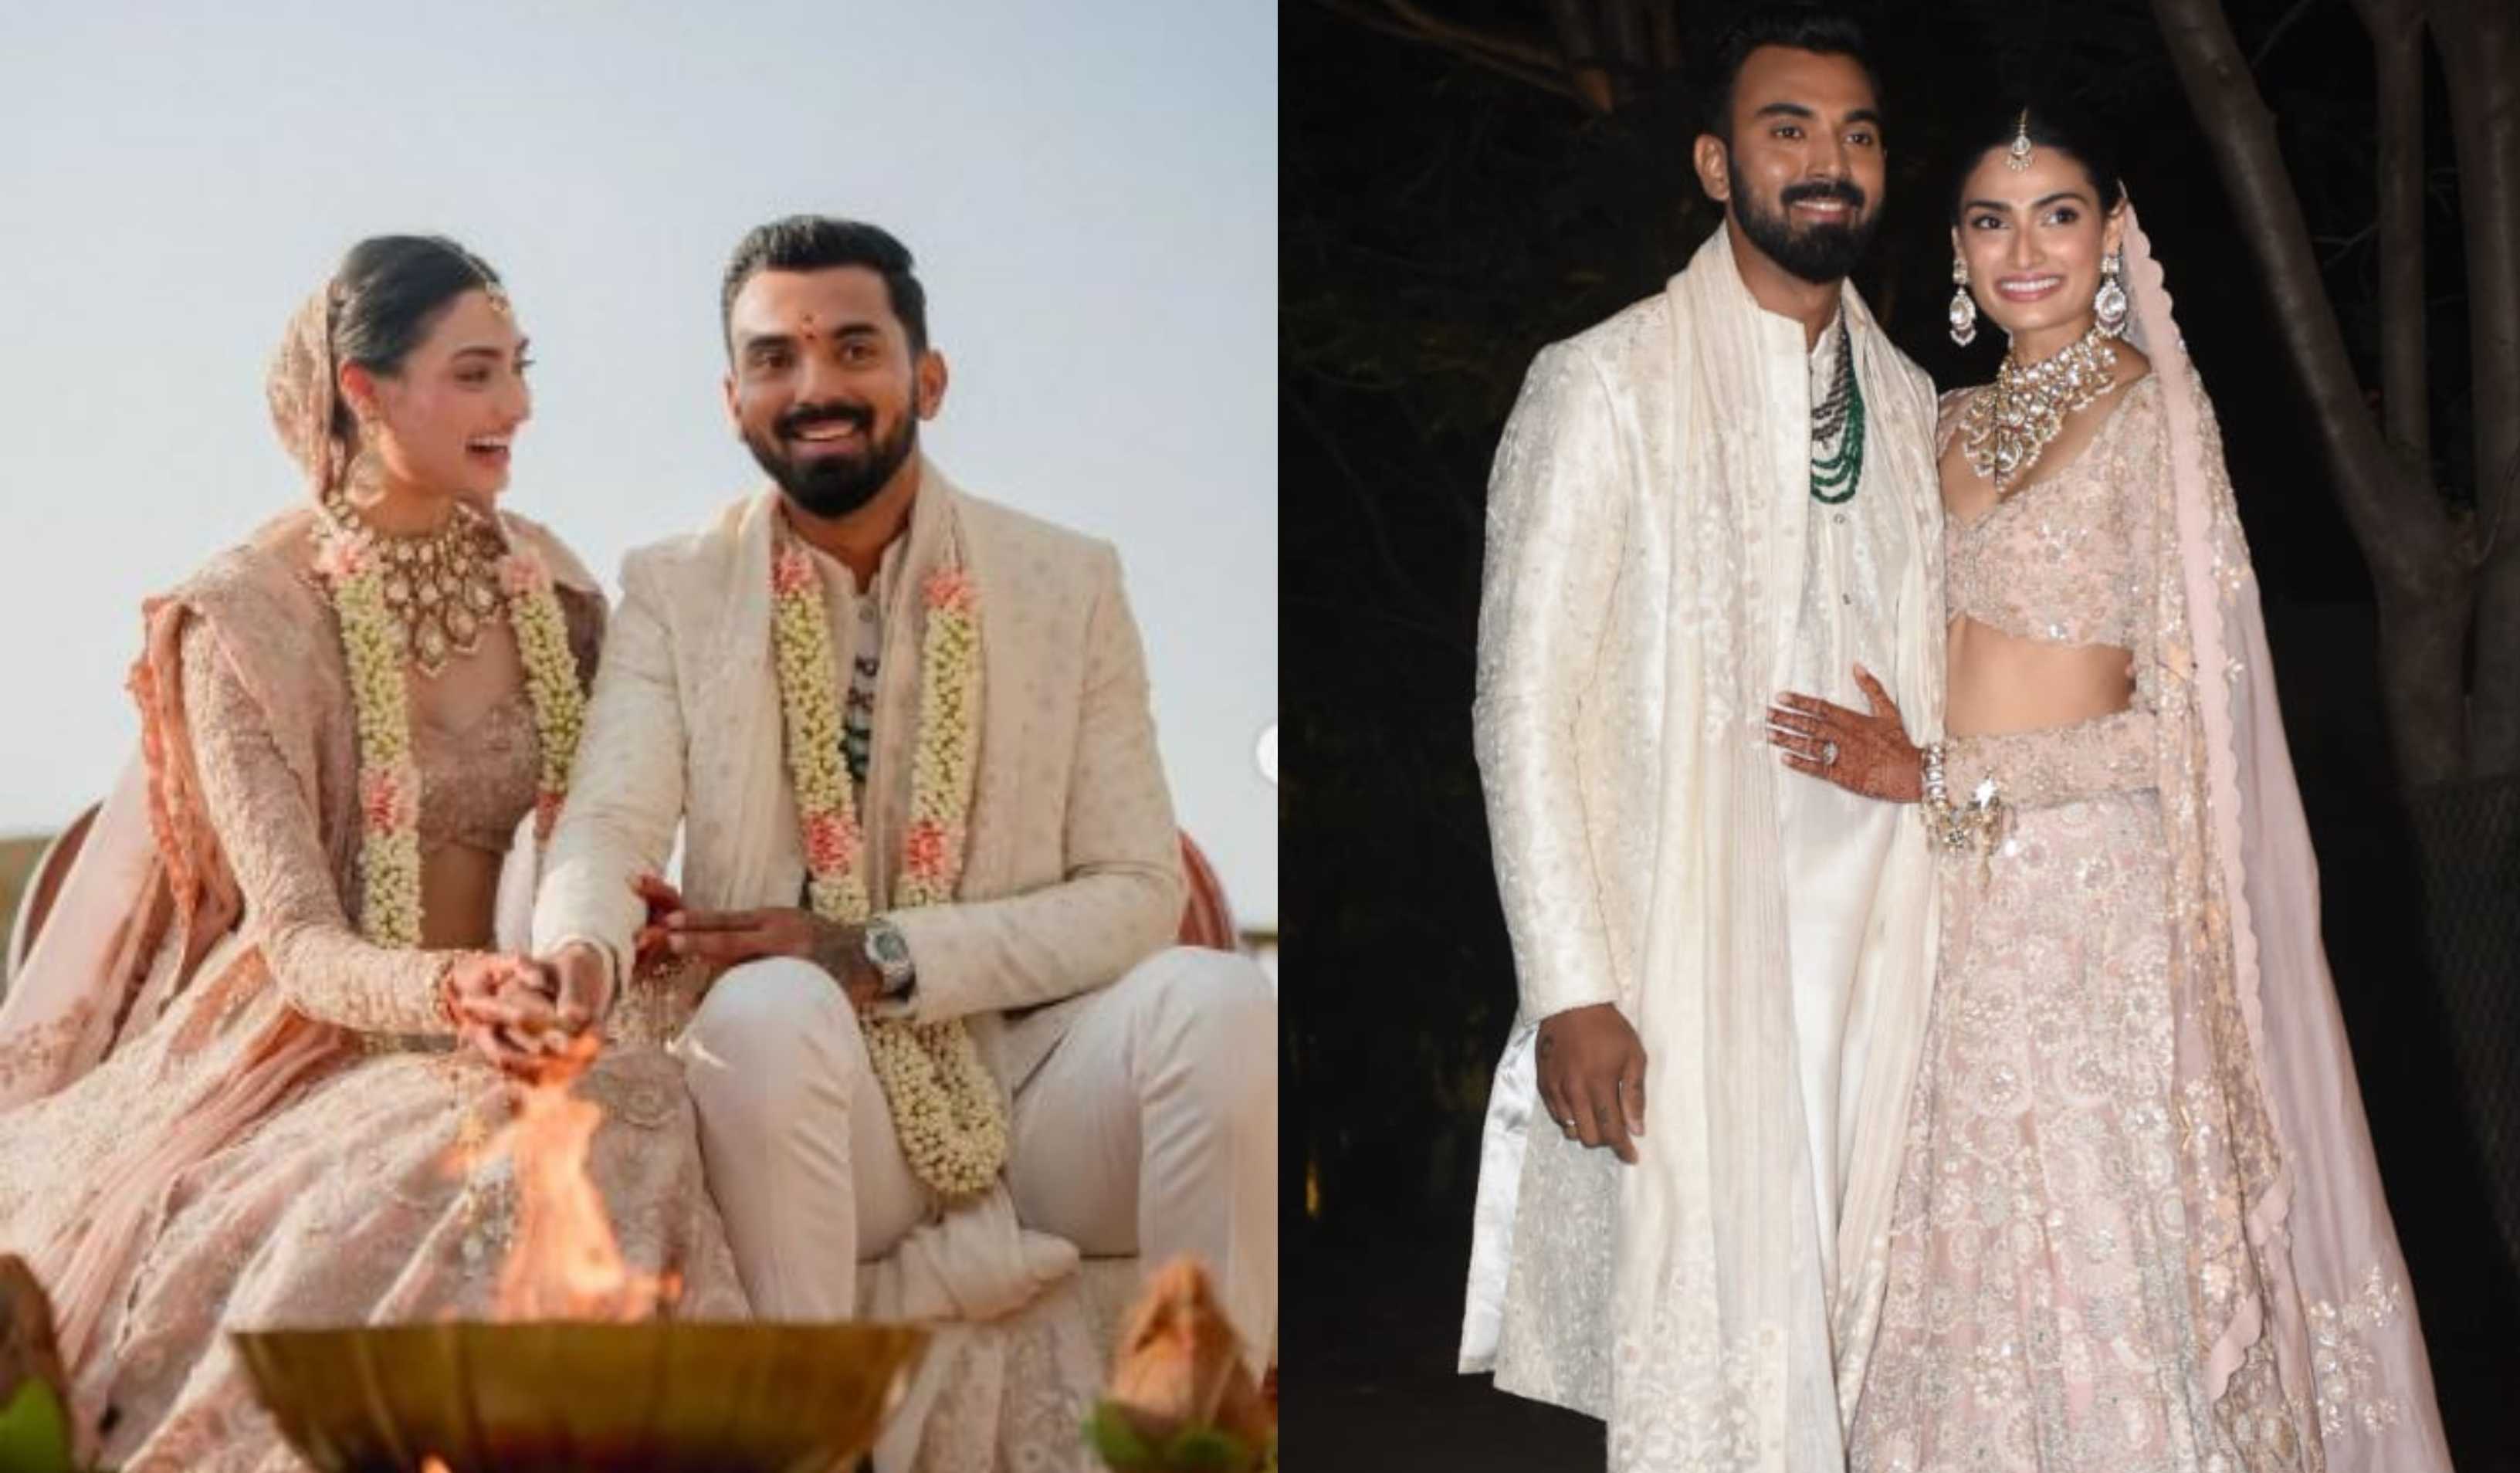 अथिया शेट्टी और KL राहुल ने शादी के बाद मीडिया के सामने दिए पोज़, बॉलीवुड दुल्हन से अलग लगीं एक्ट्रेस